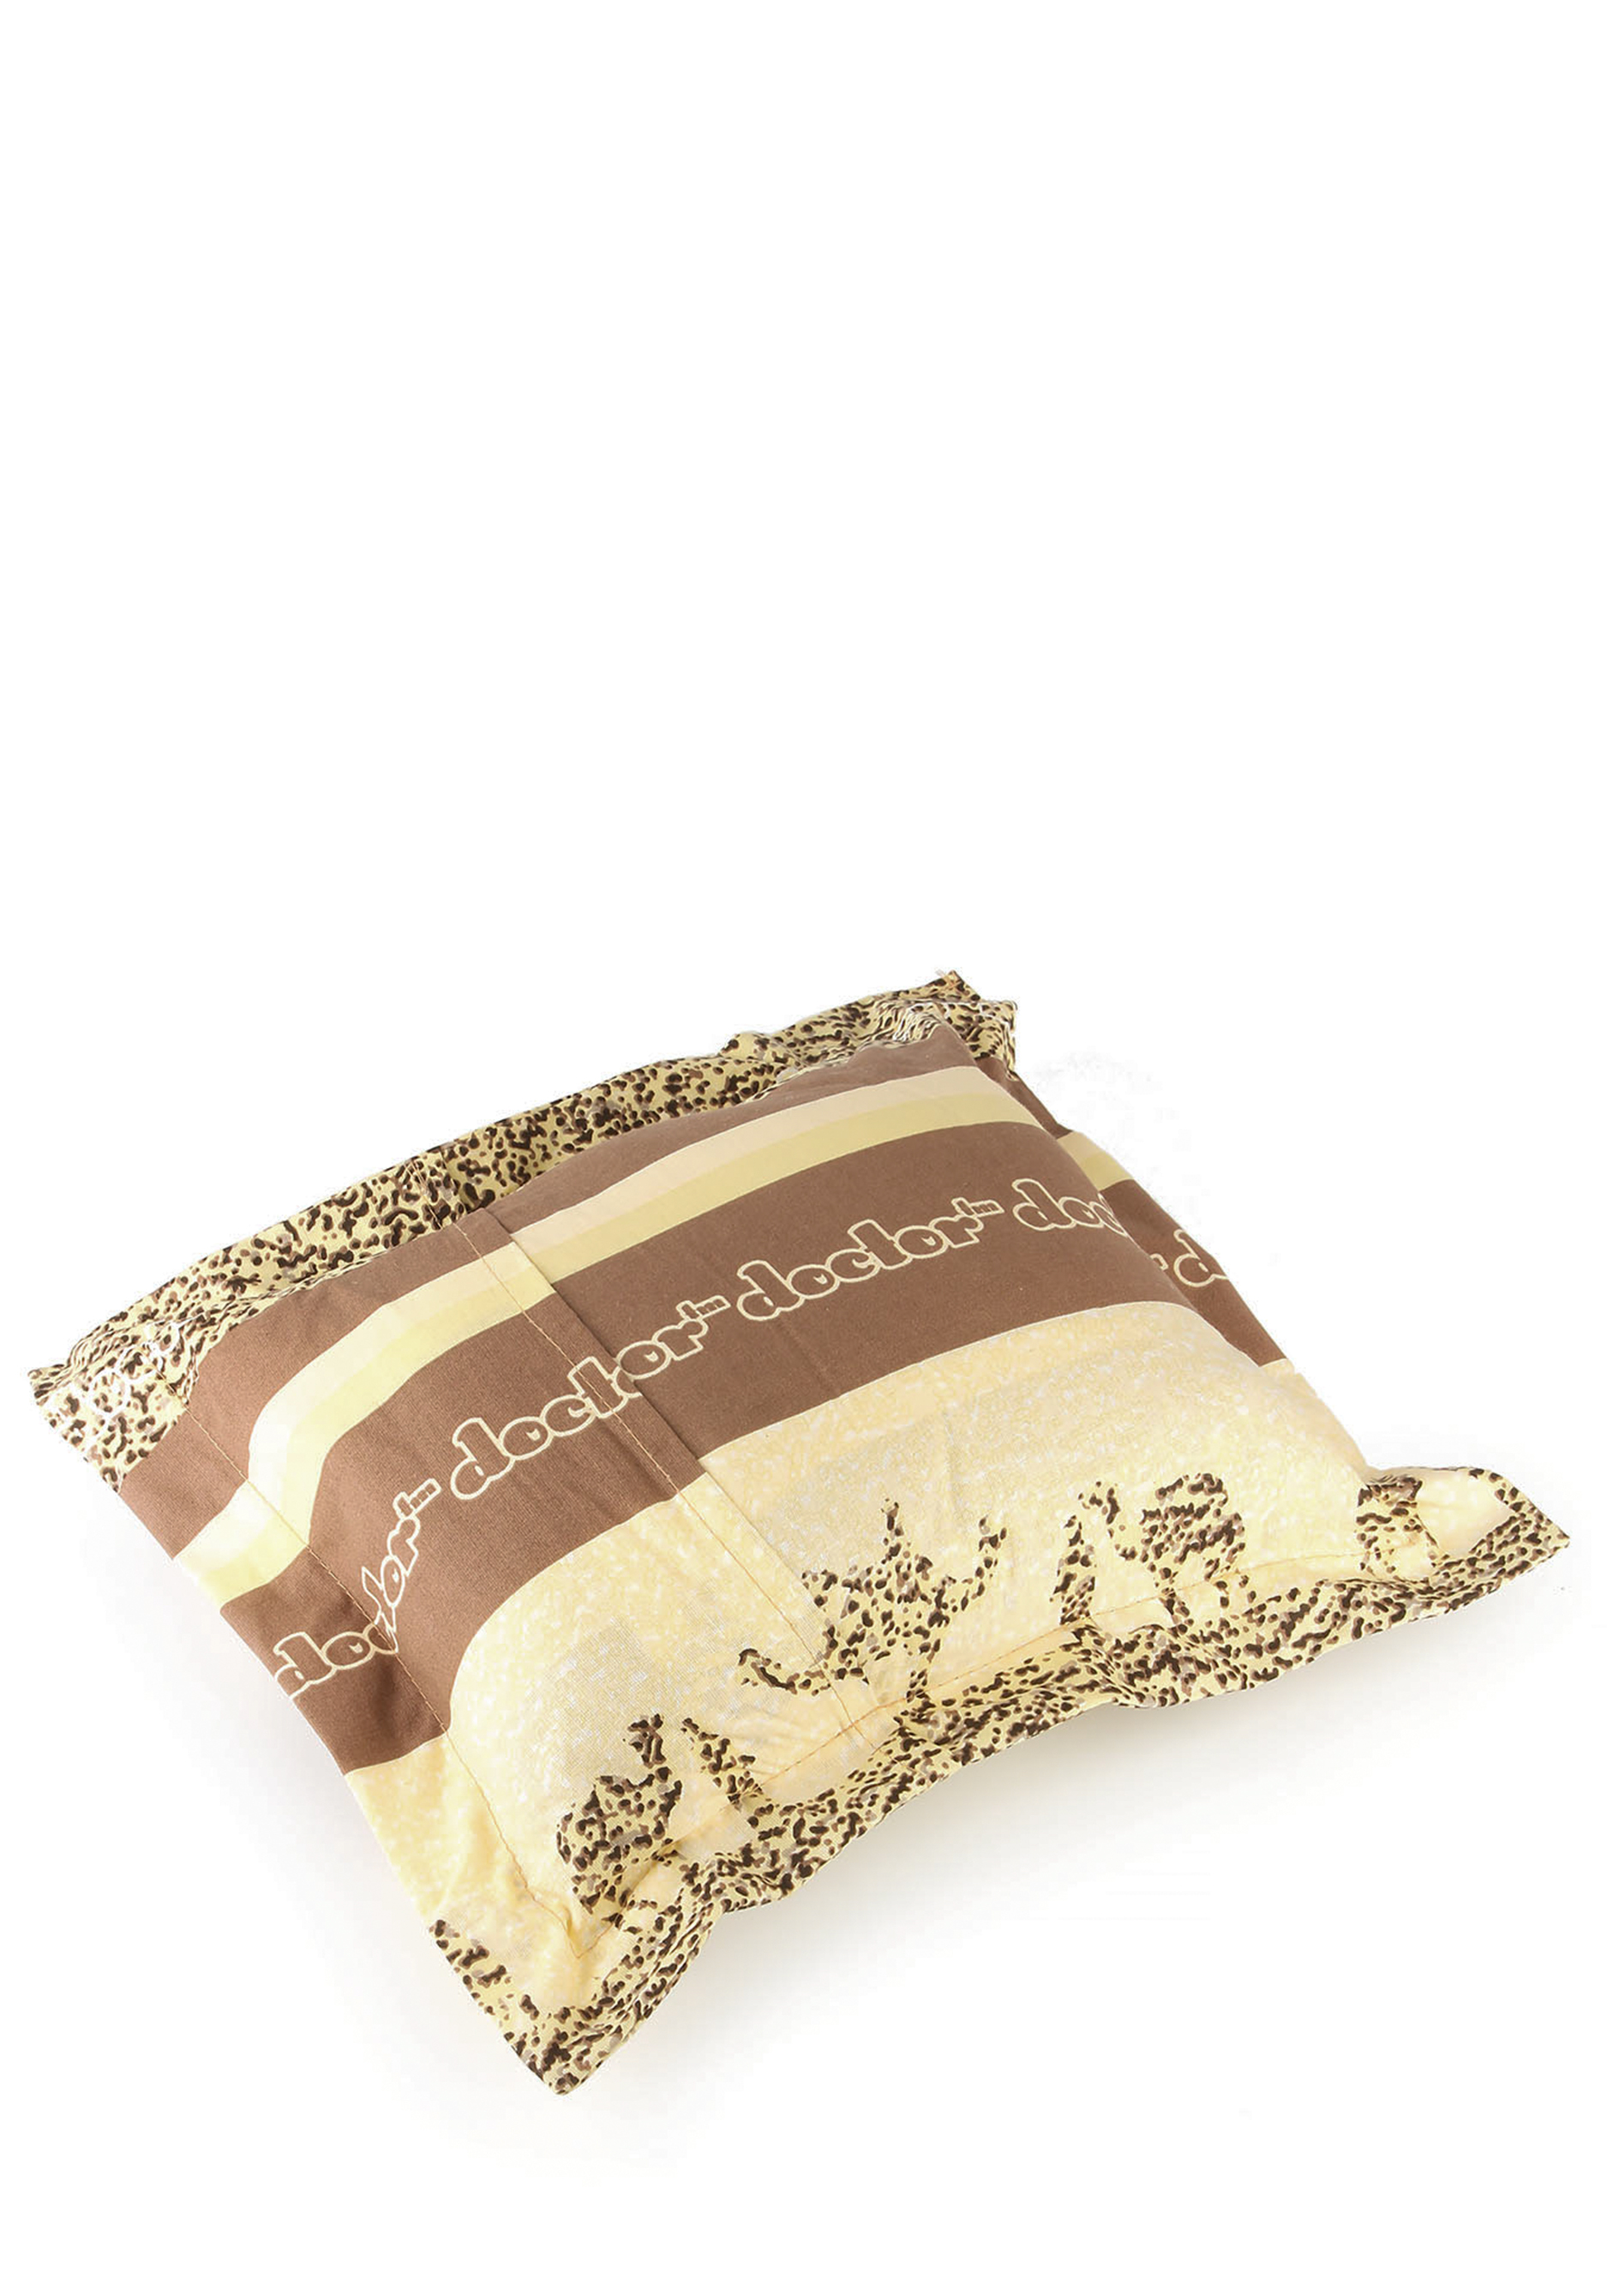 Аромо-подушка с целебными травами Центр Доктор, цвет коричневый, размер 30*30 - фото 4